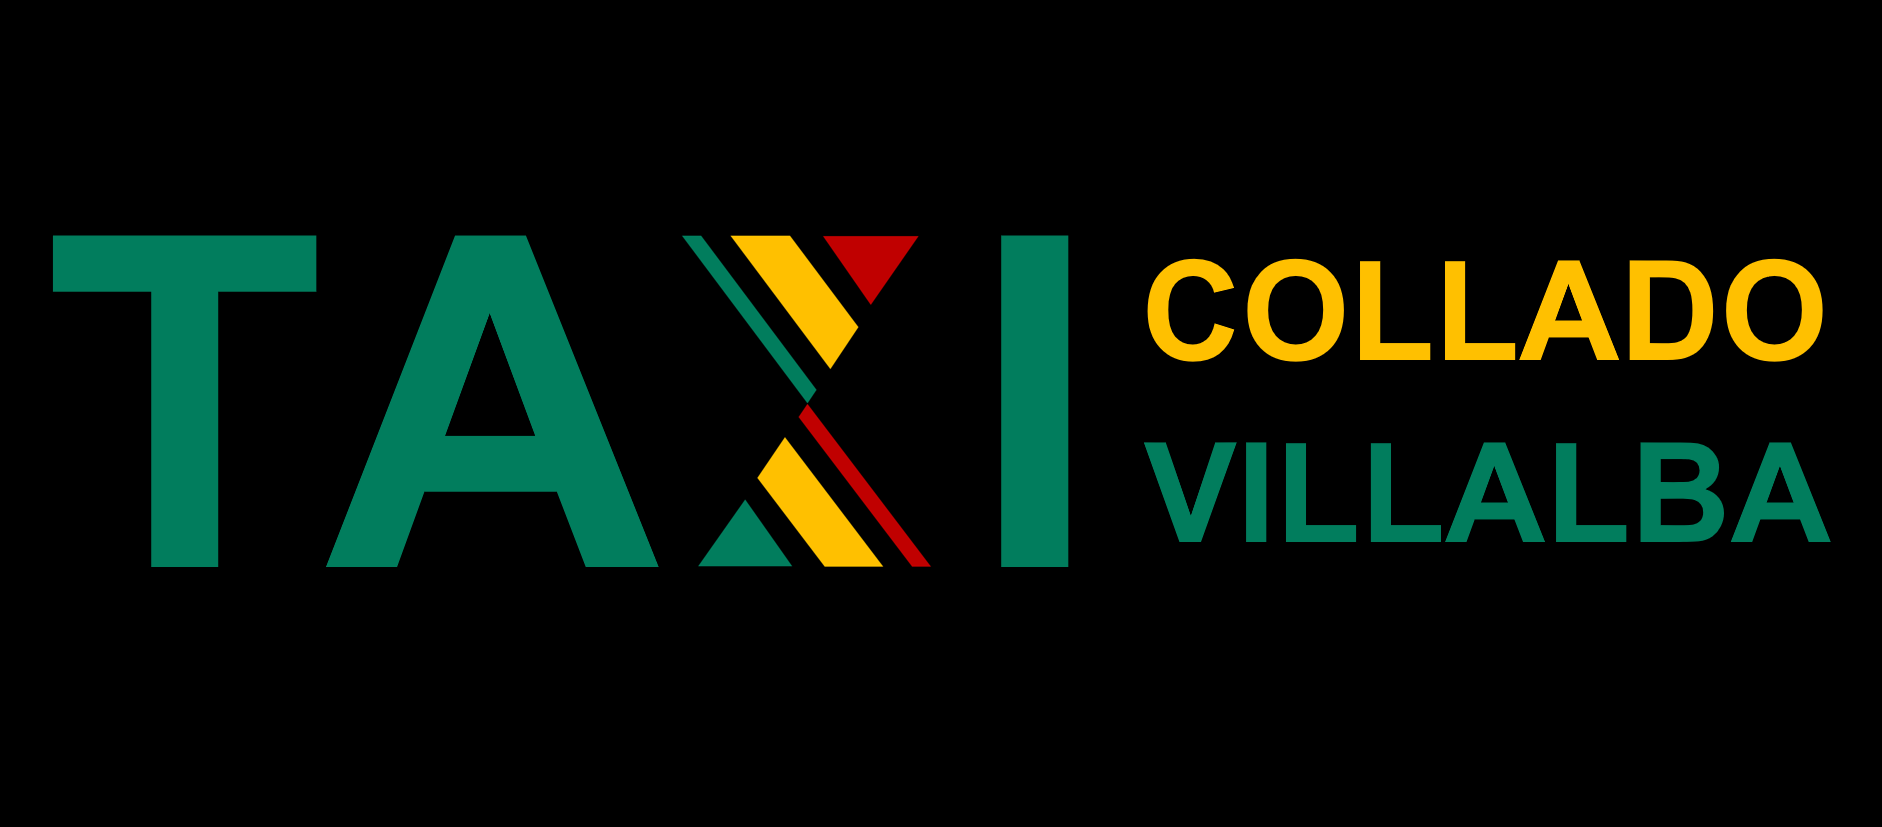 flauta silencio pozo ✓ Contactar - Radio Taxi Villalba ✓ Teléfono para pedir taxi en Villalba